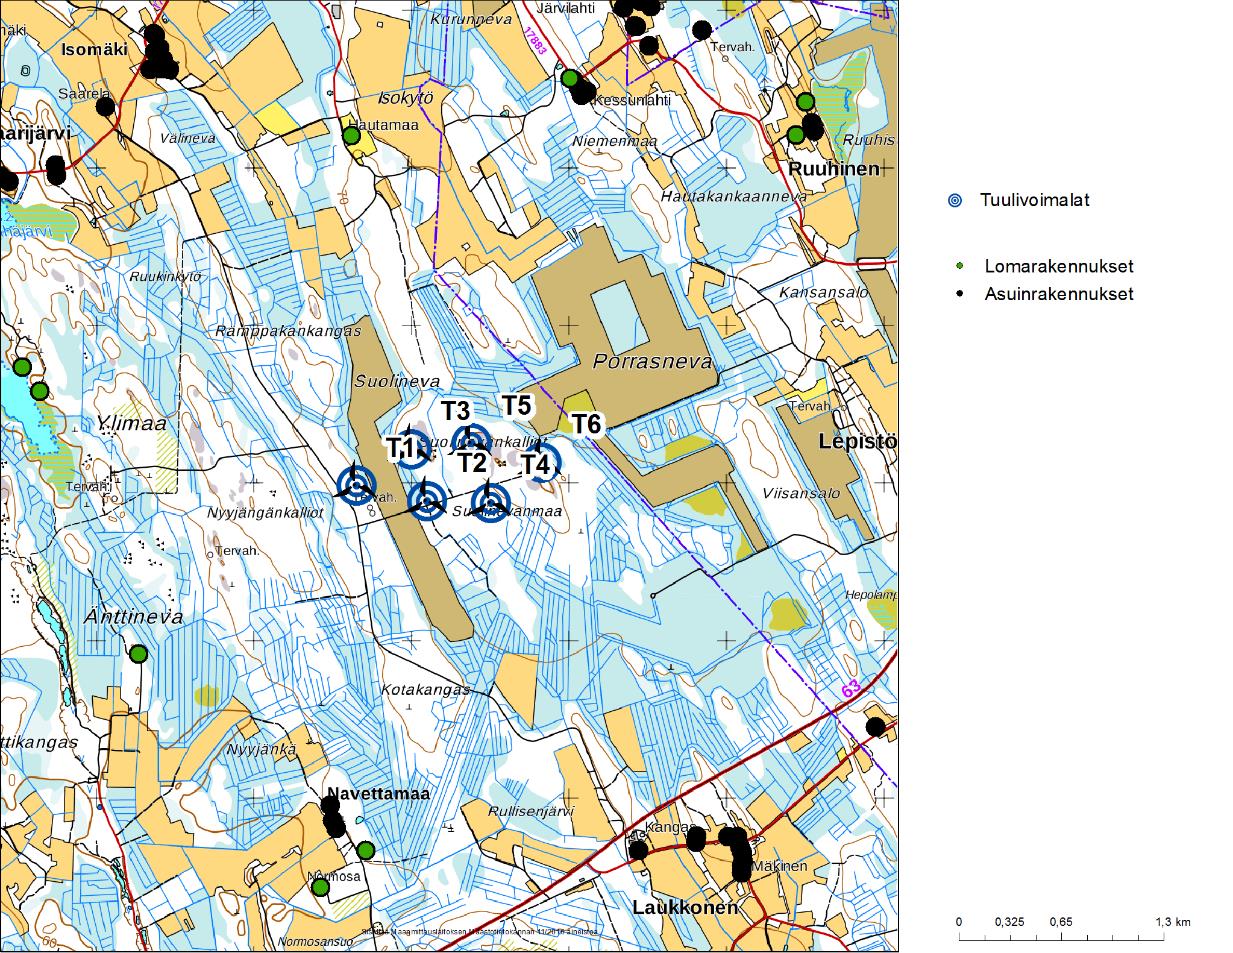 1 Johdanto Selvityksessä arvioidaan Kauhavan kaupungissa Suolinevan alueella sijaitsevan kuuden tuulivoimalan kokonaisuuden aiheuttamaa melu- ja välkevaikutusta.